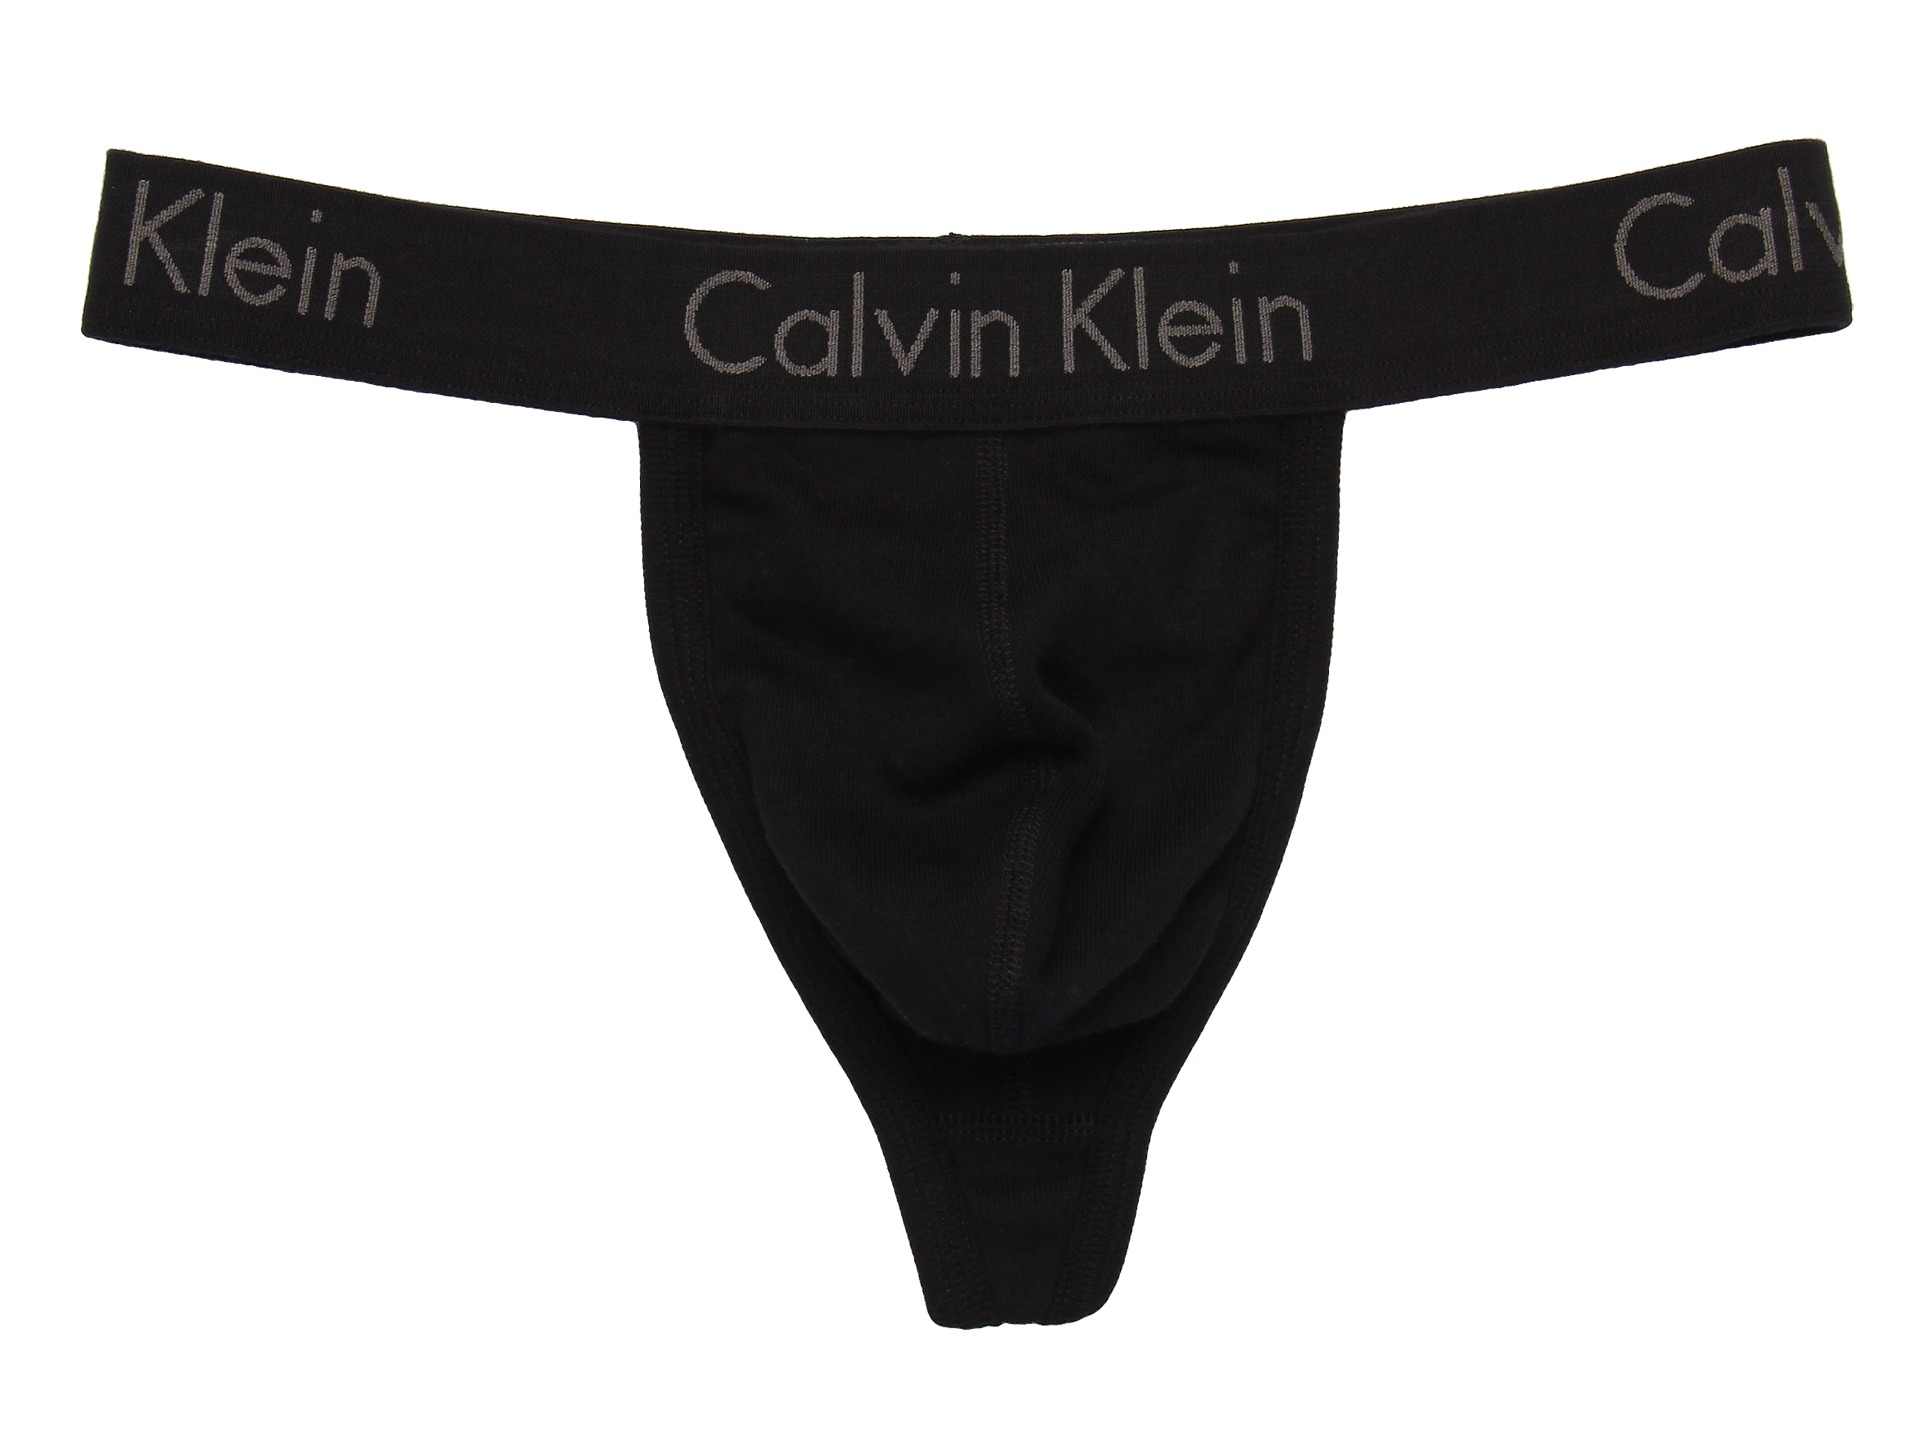 Calvin Klein Men's Body Thong Shop, SAVE 57%.